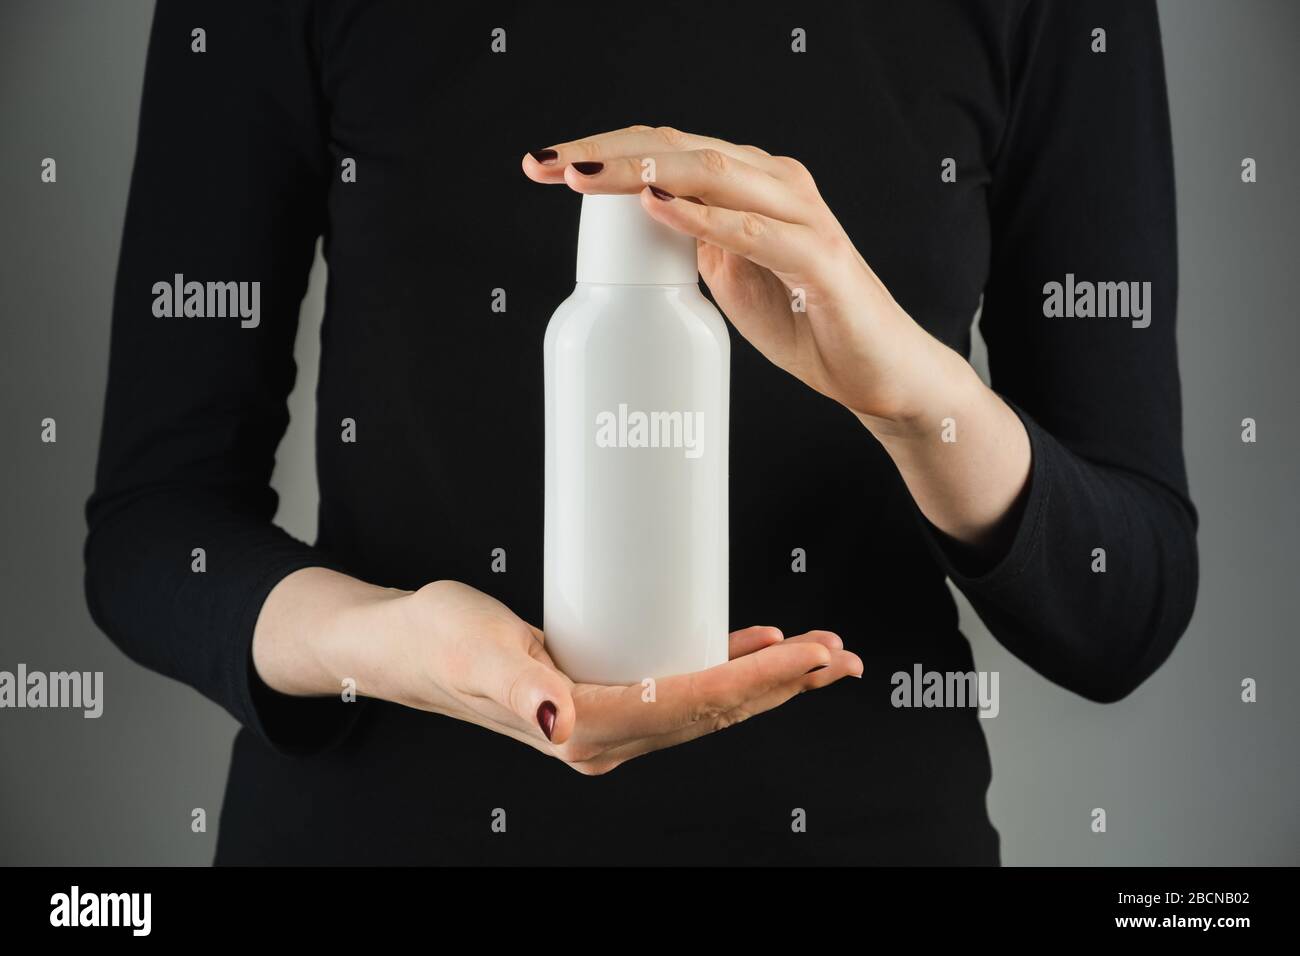 Botella blanca genérica en manos femeninas contra fondo con poca luz. Fotografía de productos, botella de plástico en blanco con espacio para texto de Marca o logotipo Foto de stock